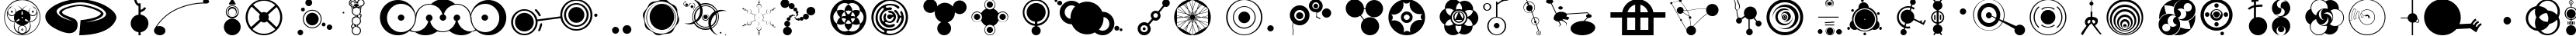 Пример написания английского алфавита шрифтом CropBats AOE